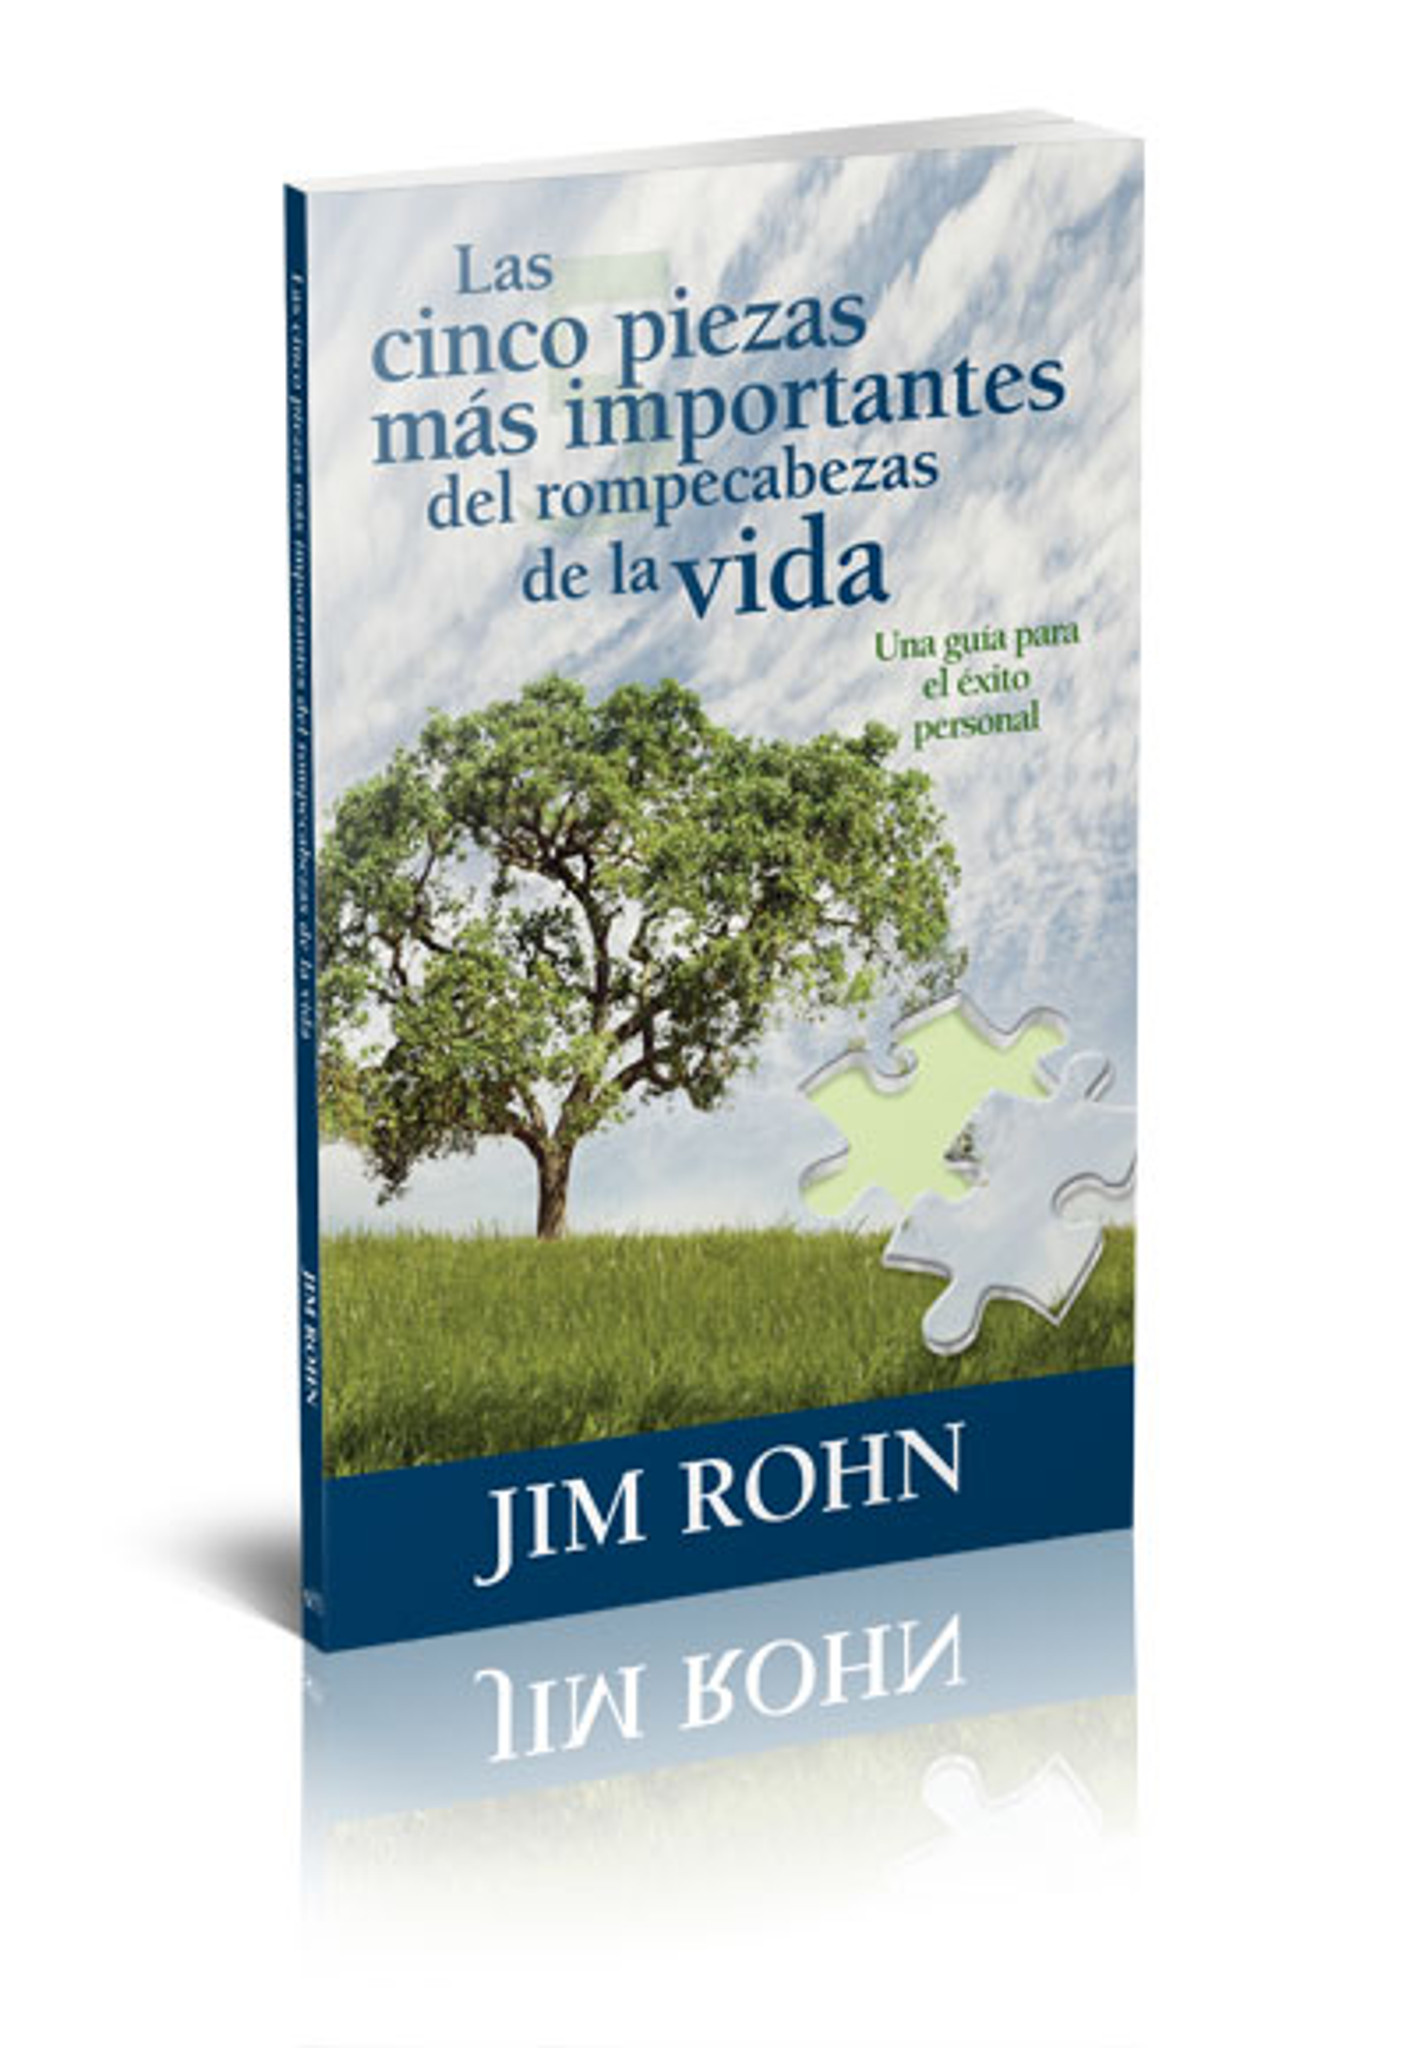 Las Cinco Piezas M'as Importantes del Rompecabezas la Vida by Jim Rohn